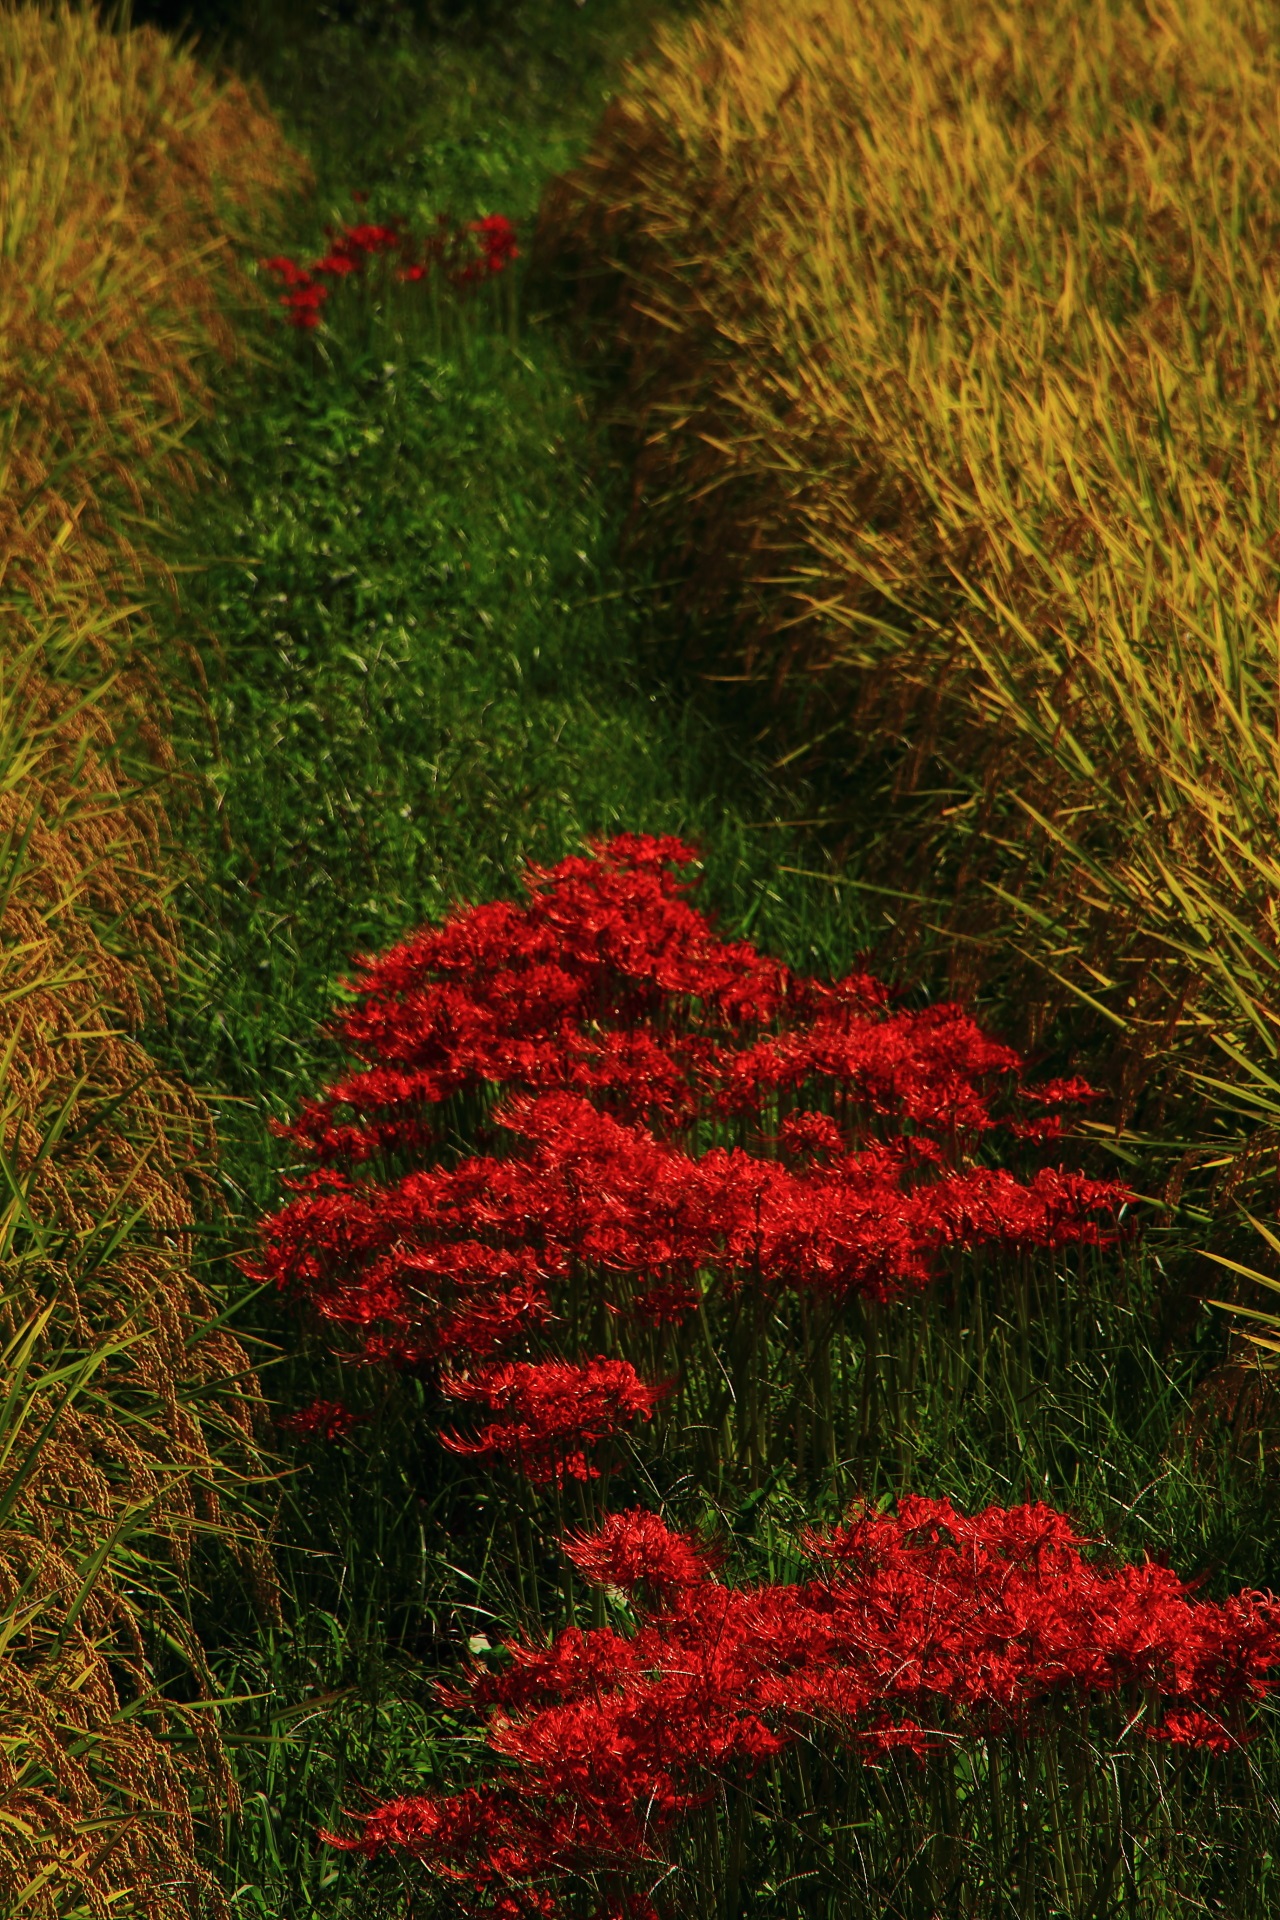 田んぼのあぜ道の緑のライン上にまとまって咲く赤い彼岸花